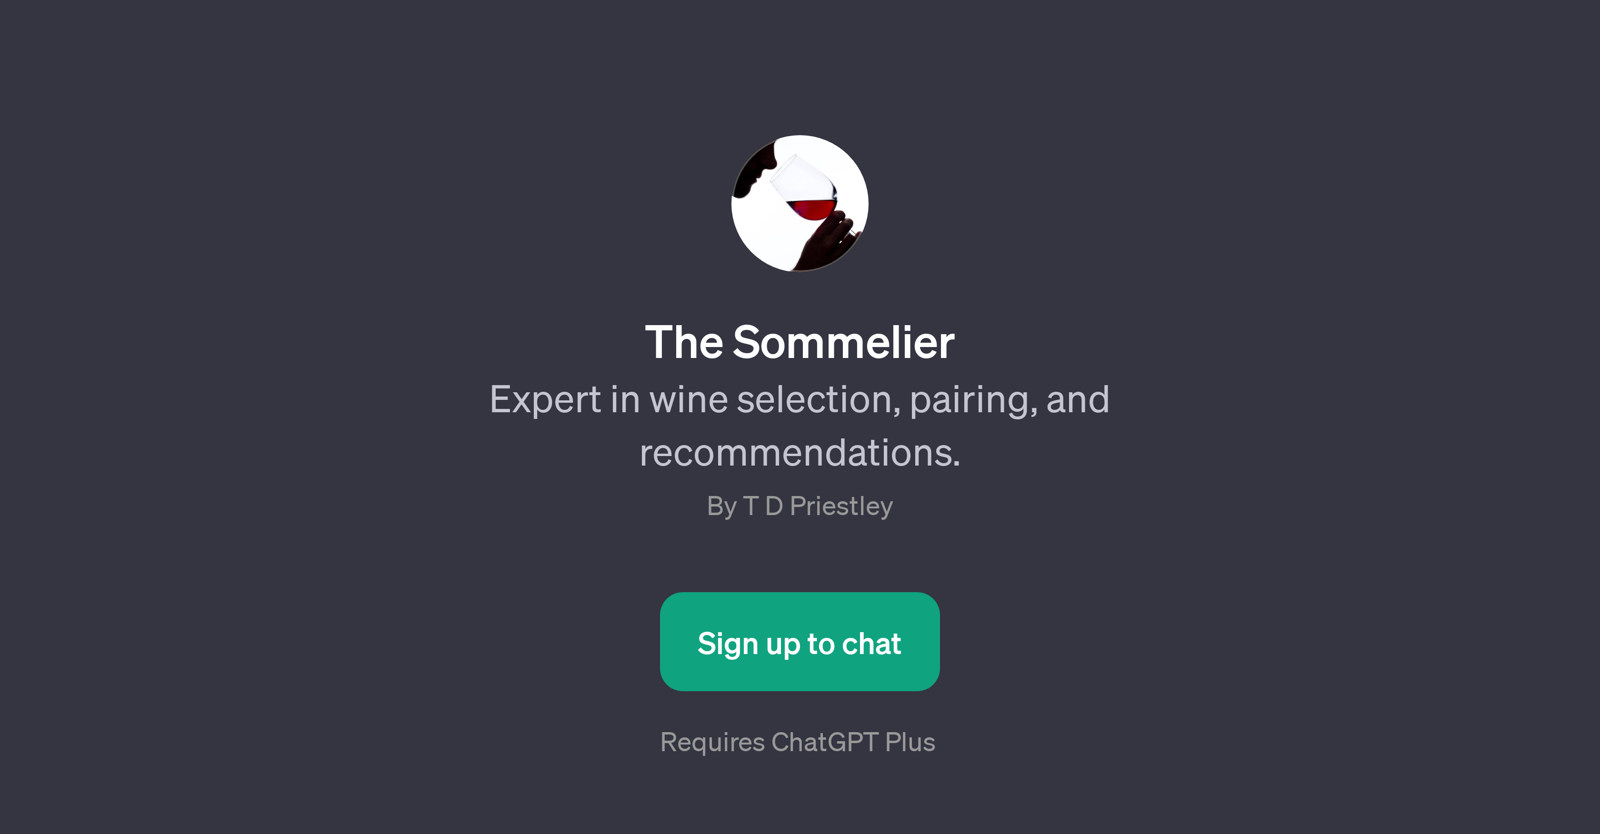 The Sommelier website